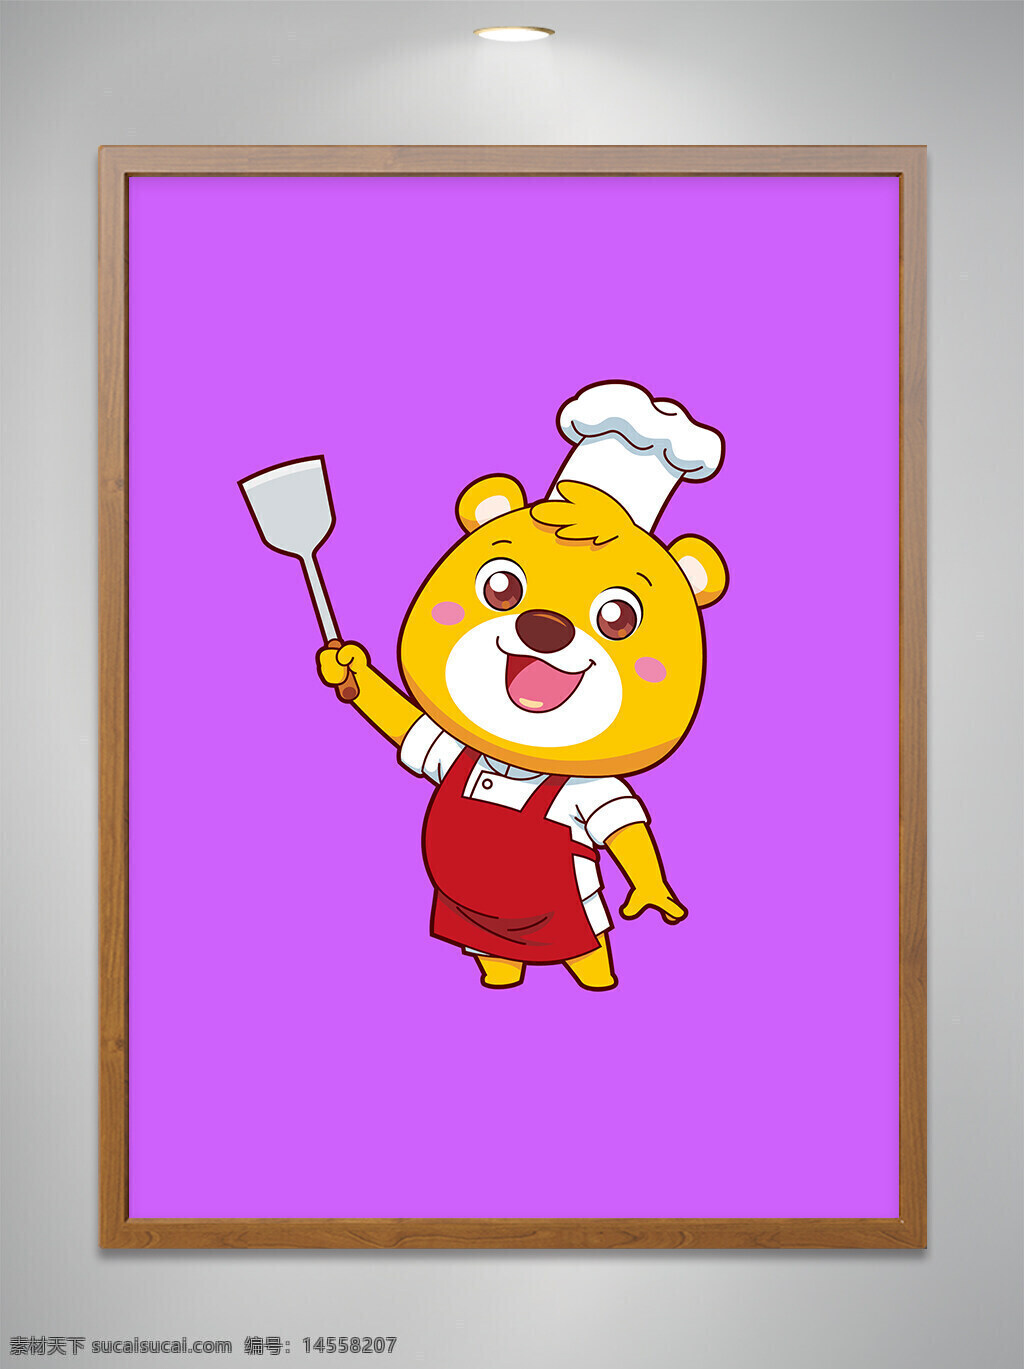 通原创 卡通吉祥物 卡通动物 卡通可爱小熊 卡通可爱小熊厨师 卡通可爱小熊厨师拿锅铲 餐饮 ai矢量图